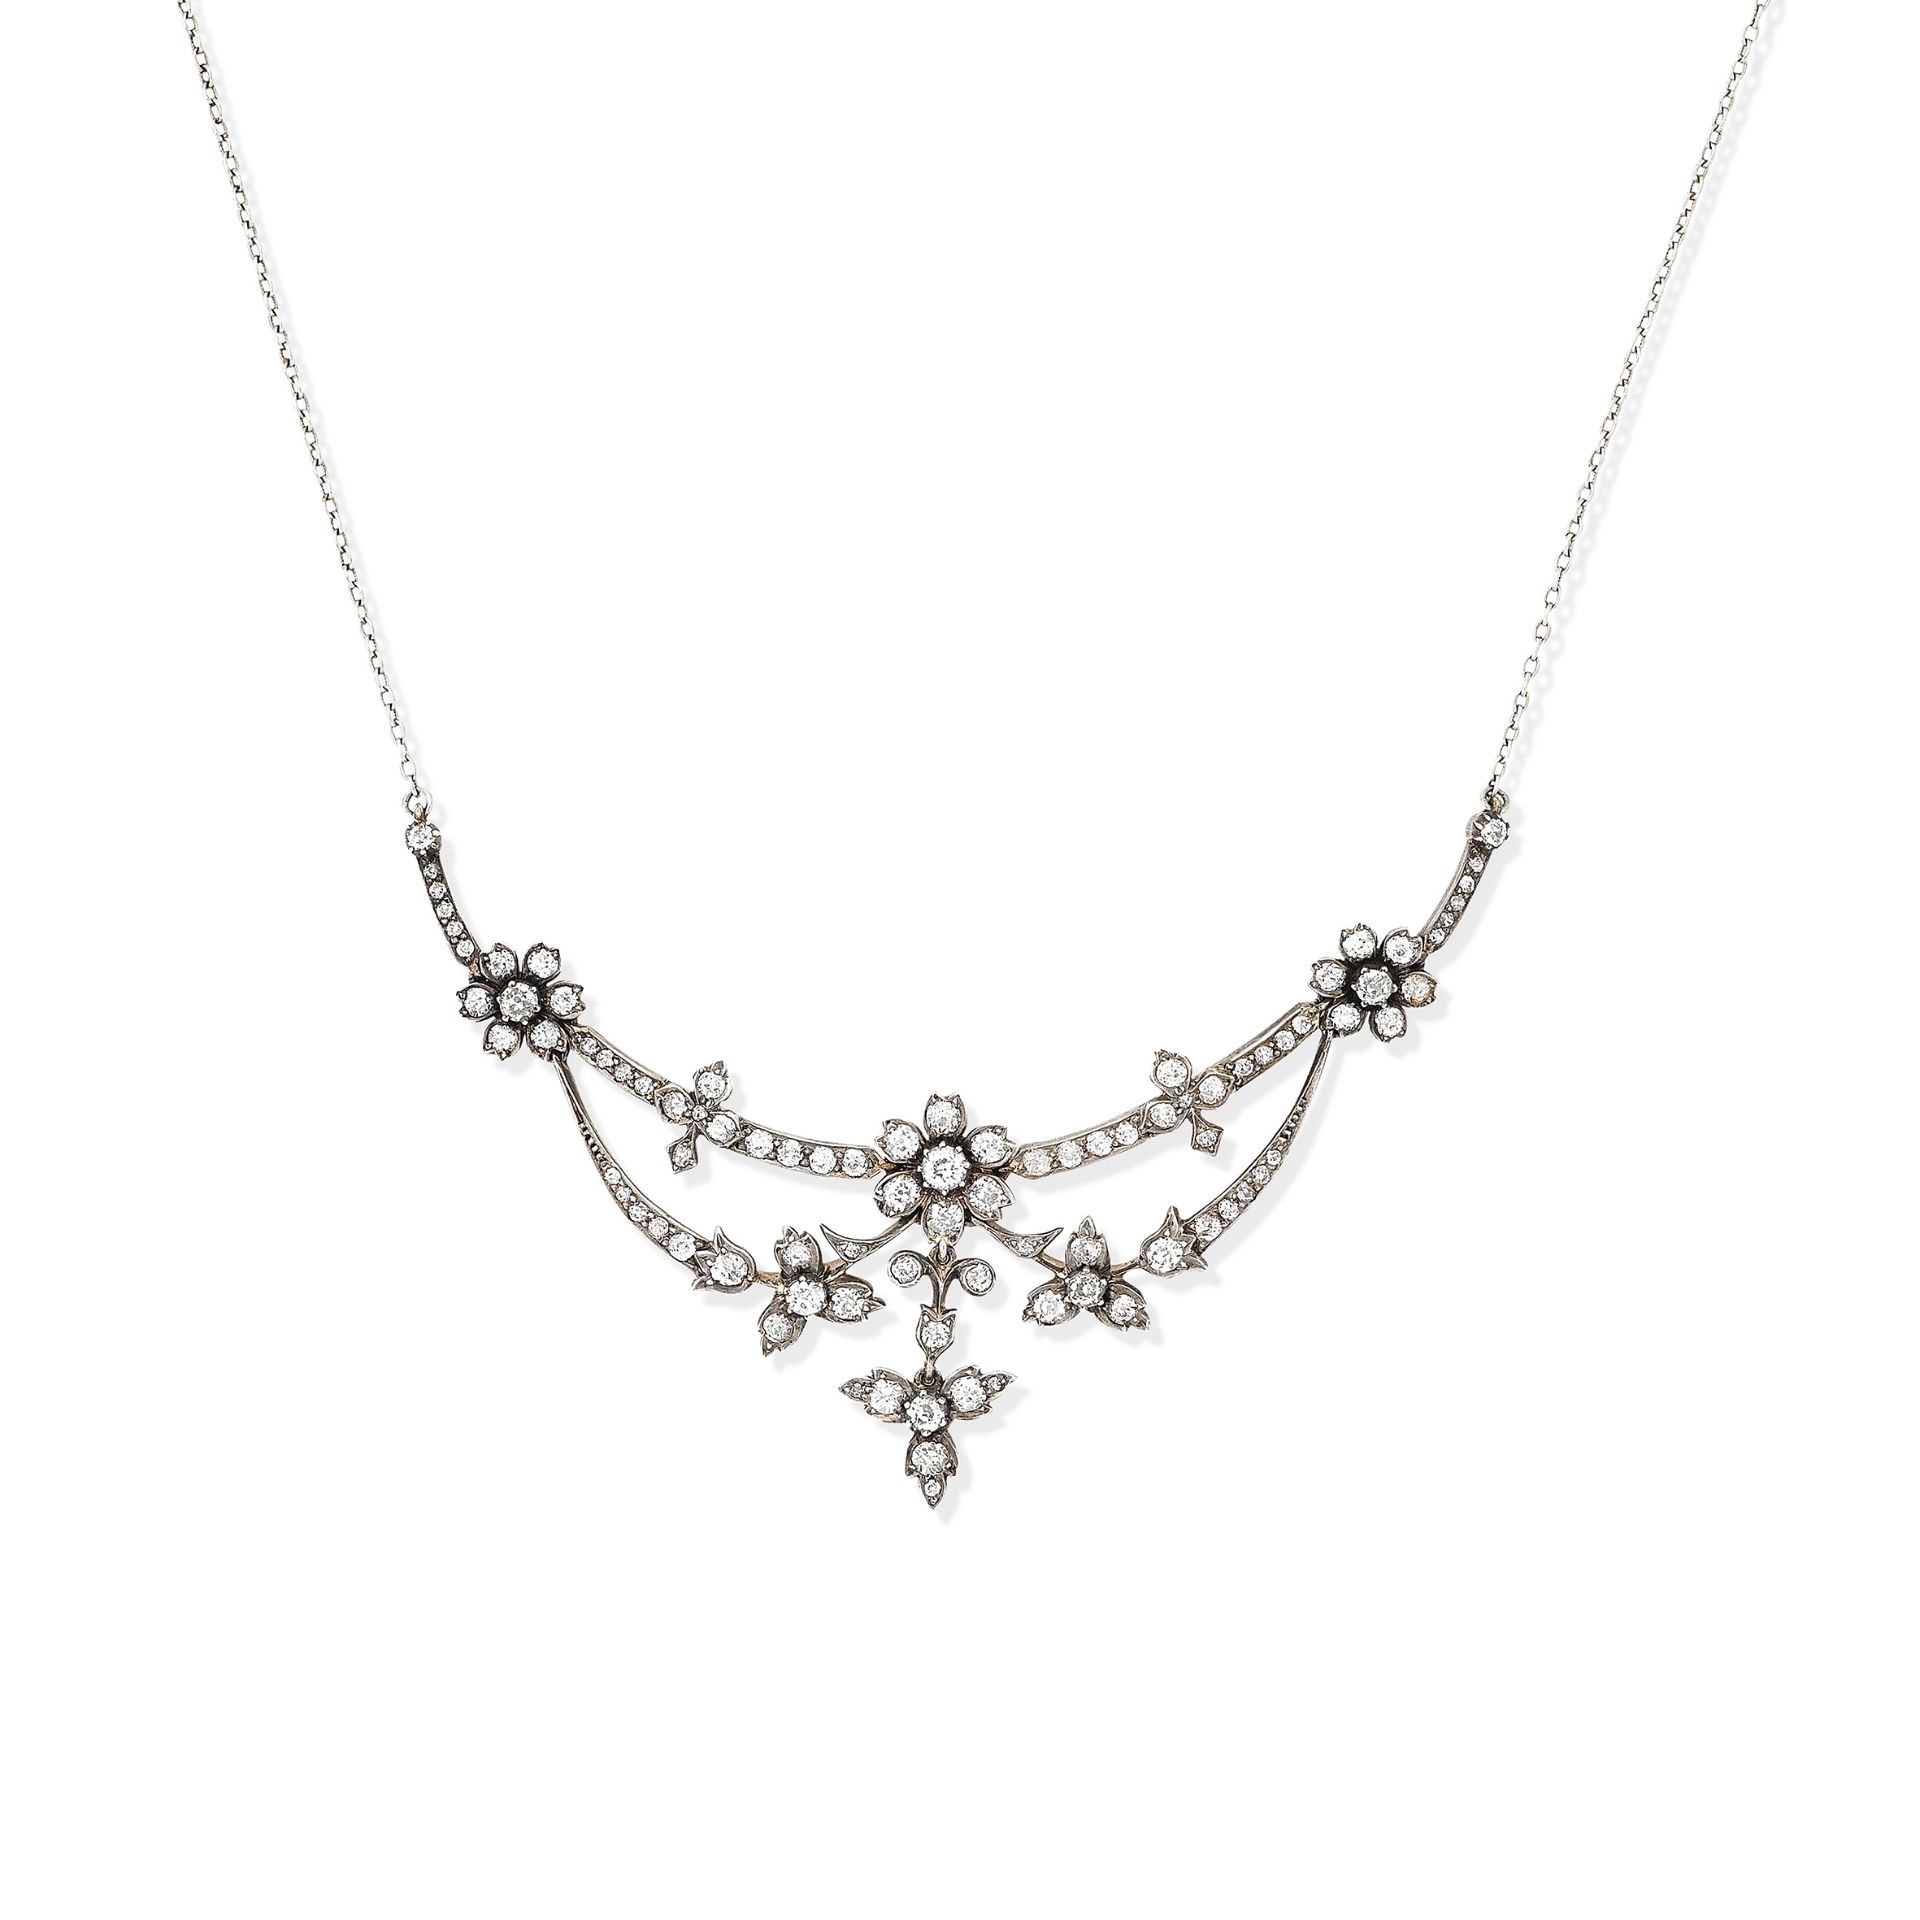 A diamond necklace, Edwardian